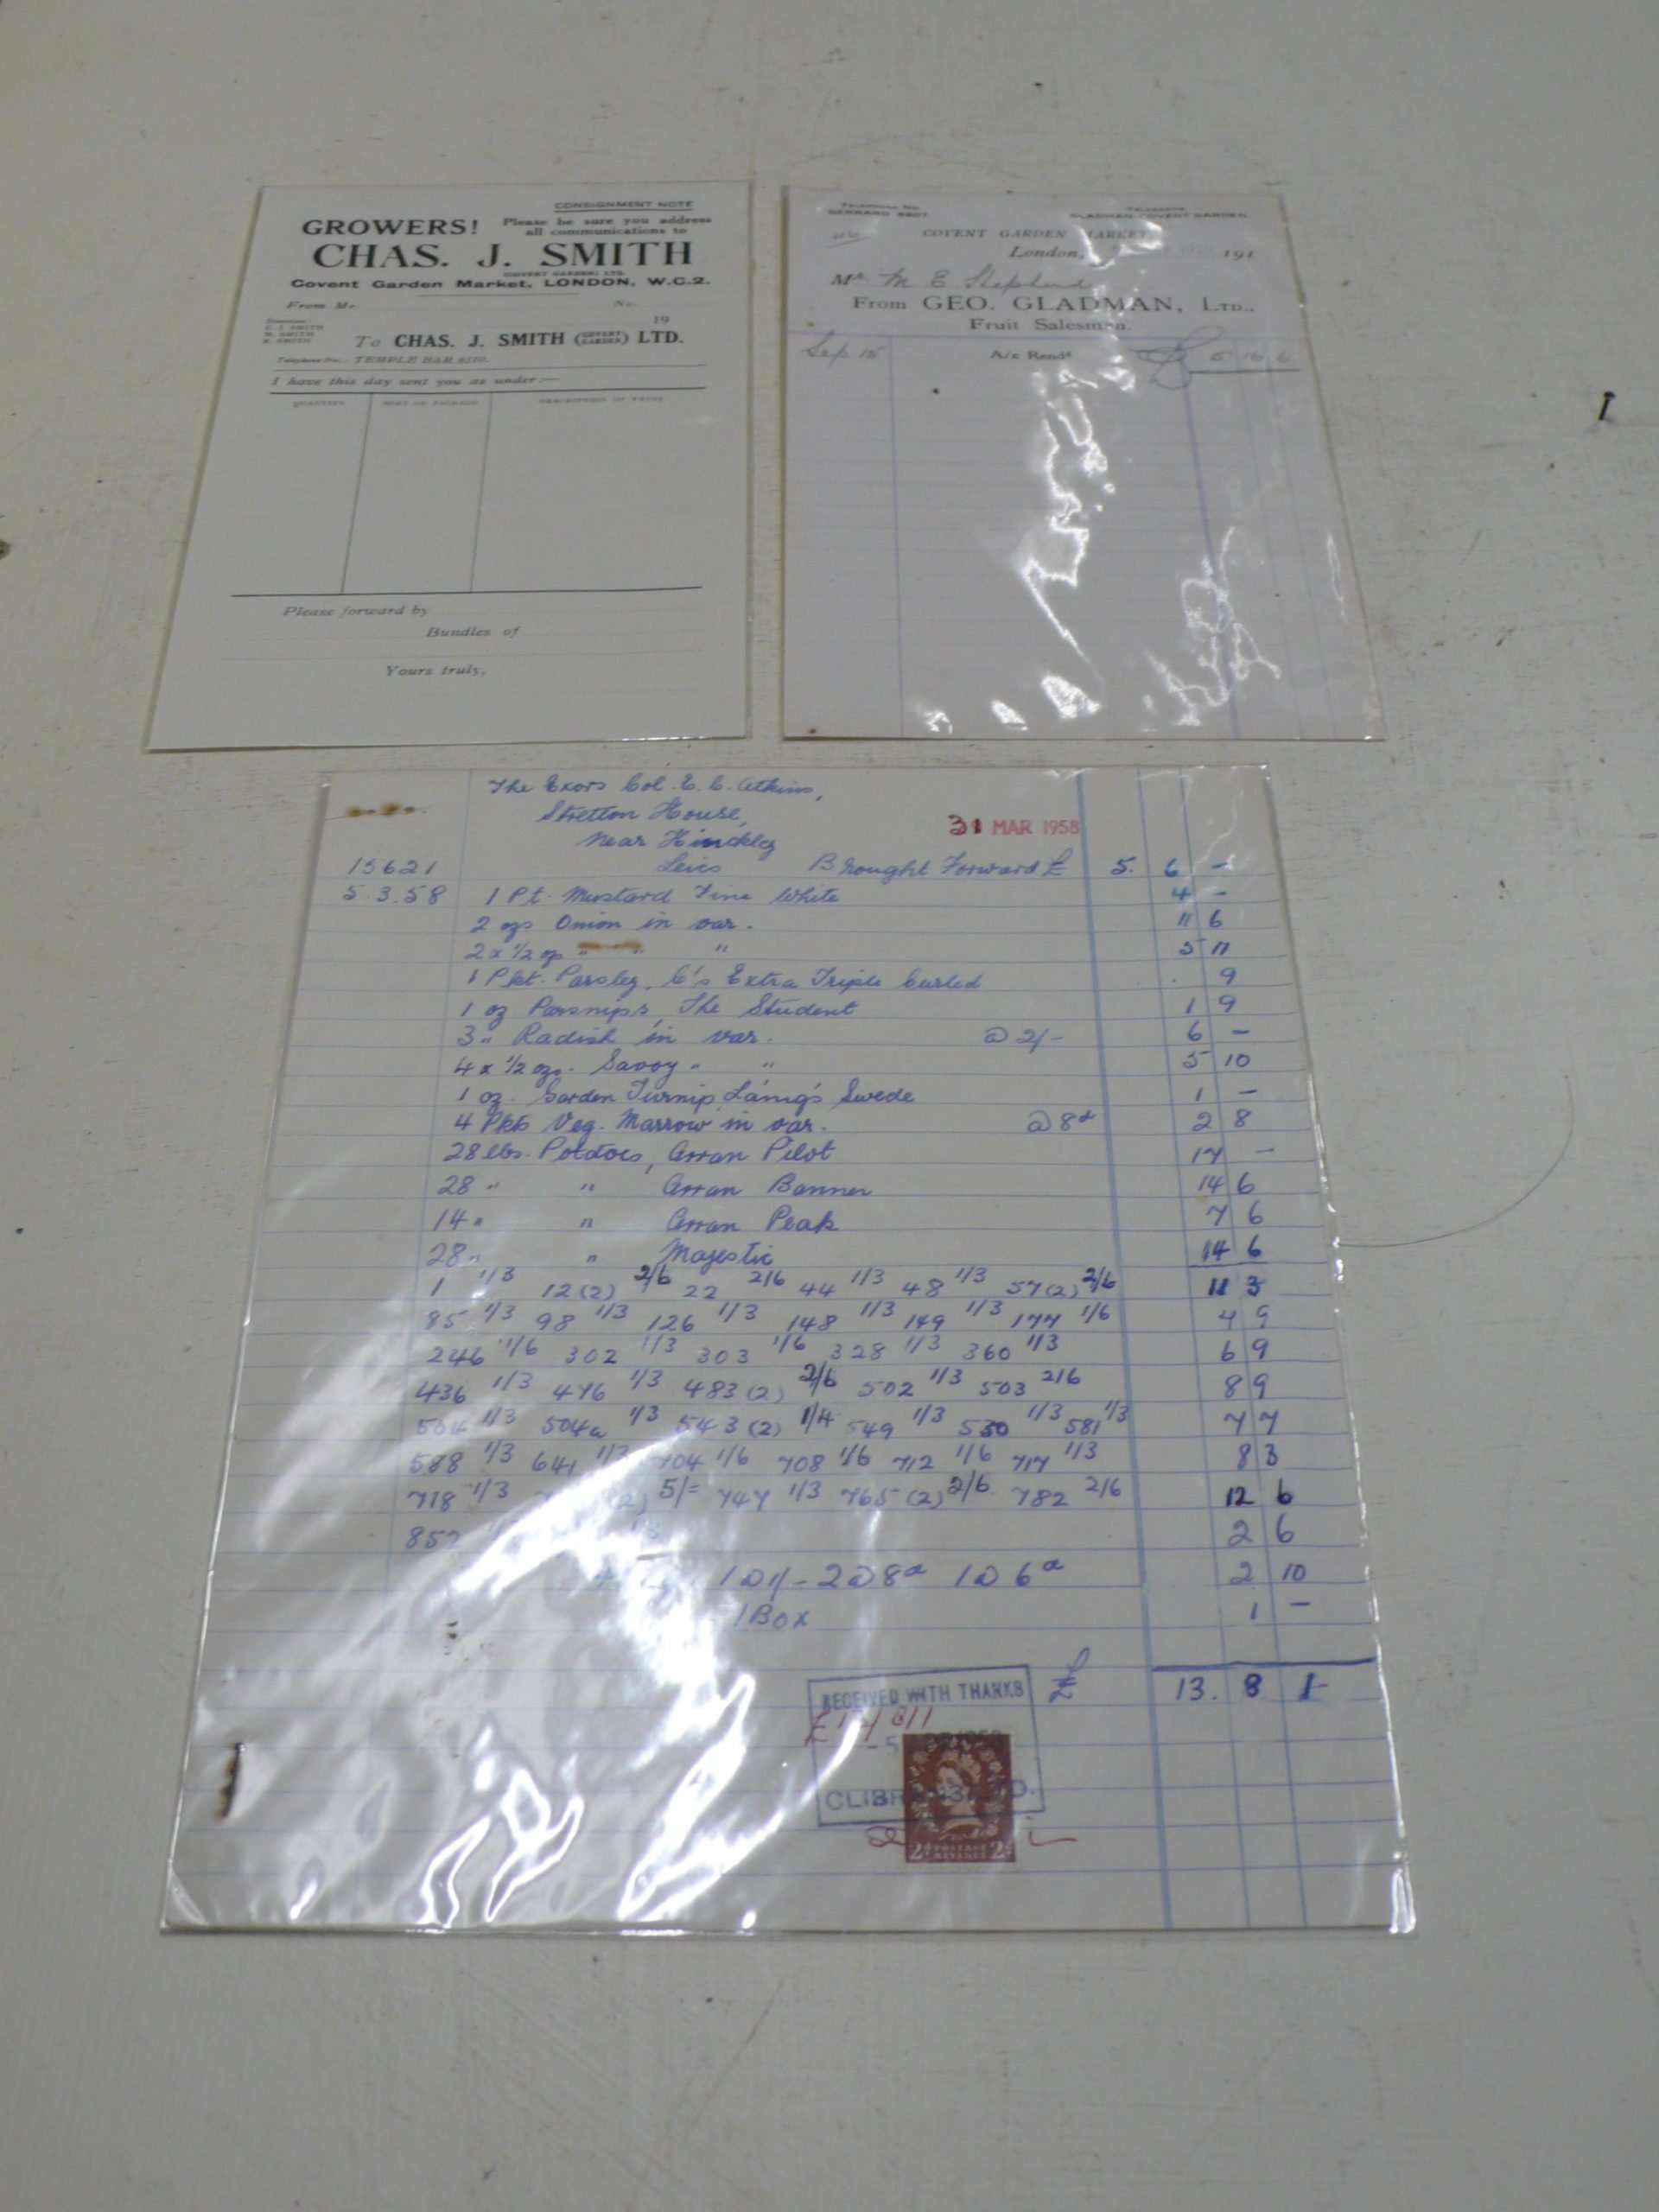 Vintage Nursery Invoices